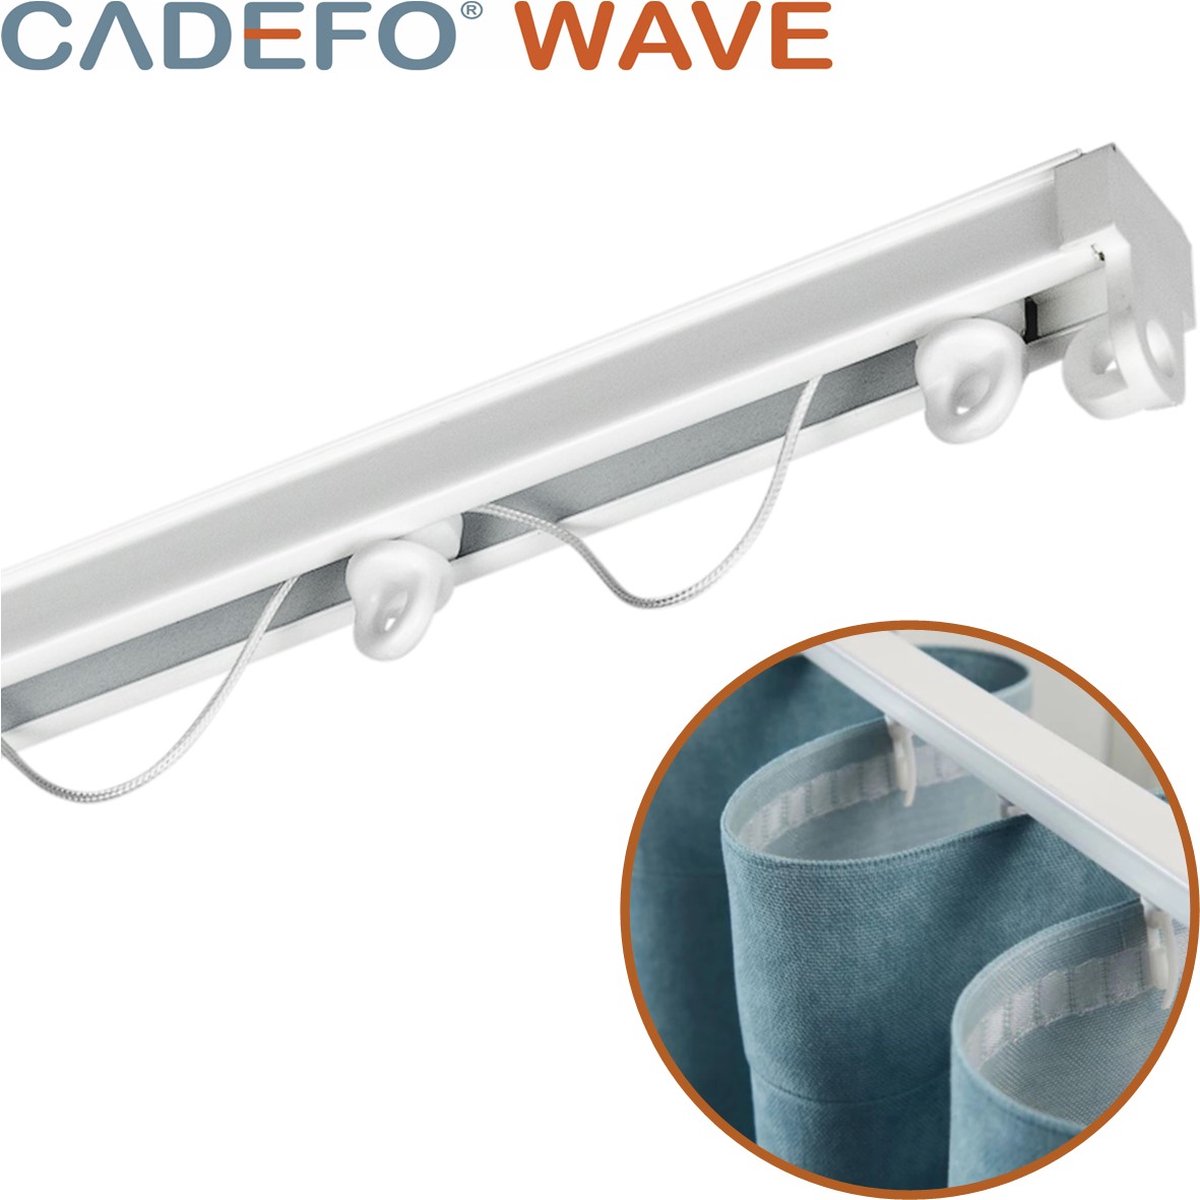 CADEFO WAVE (451 - 500 cm) Gordijnrails - Compleet op maat! - UIT 1 STUK - Leverbaar tot 6 meter - Plafondbevestiging - Lengte 463 cm